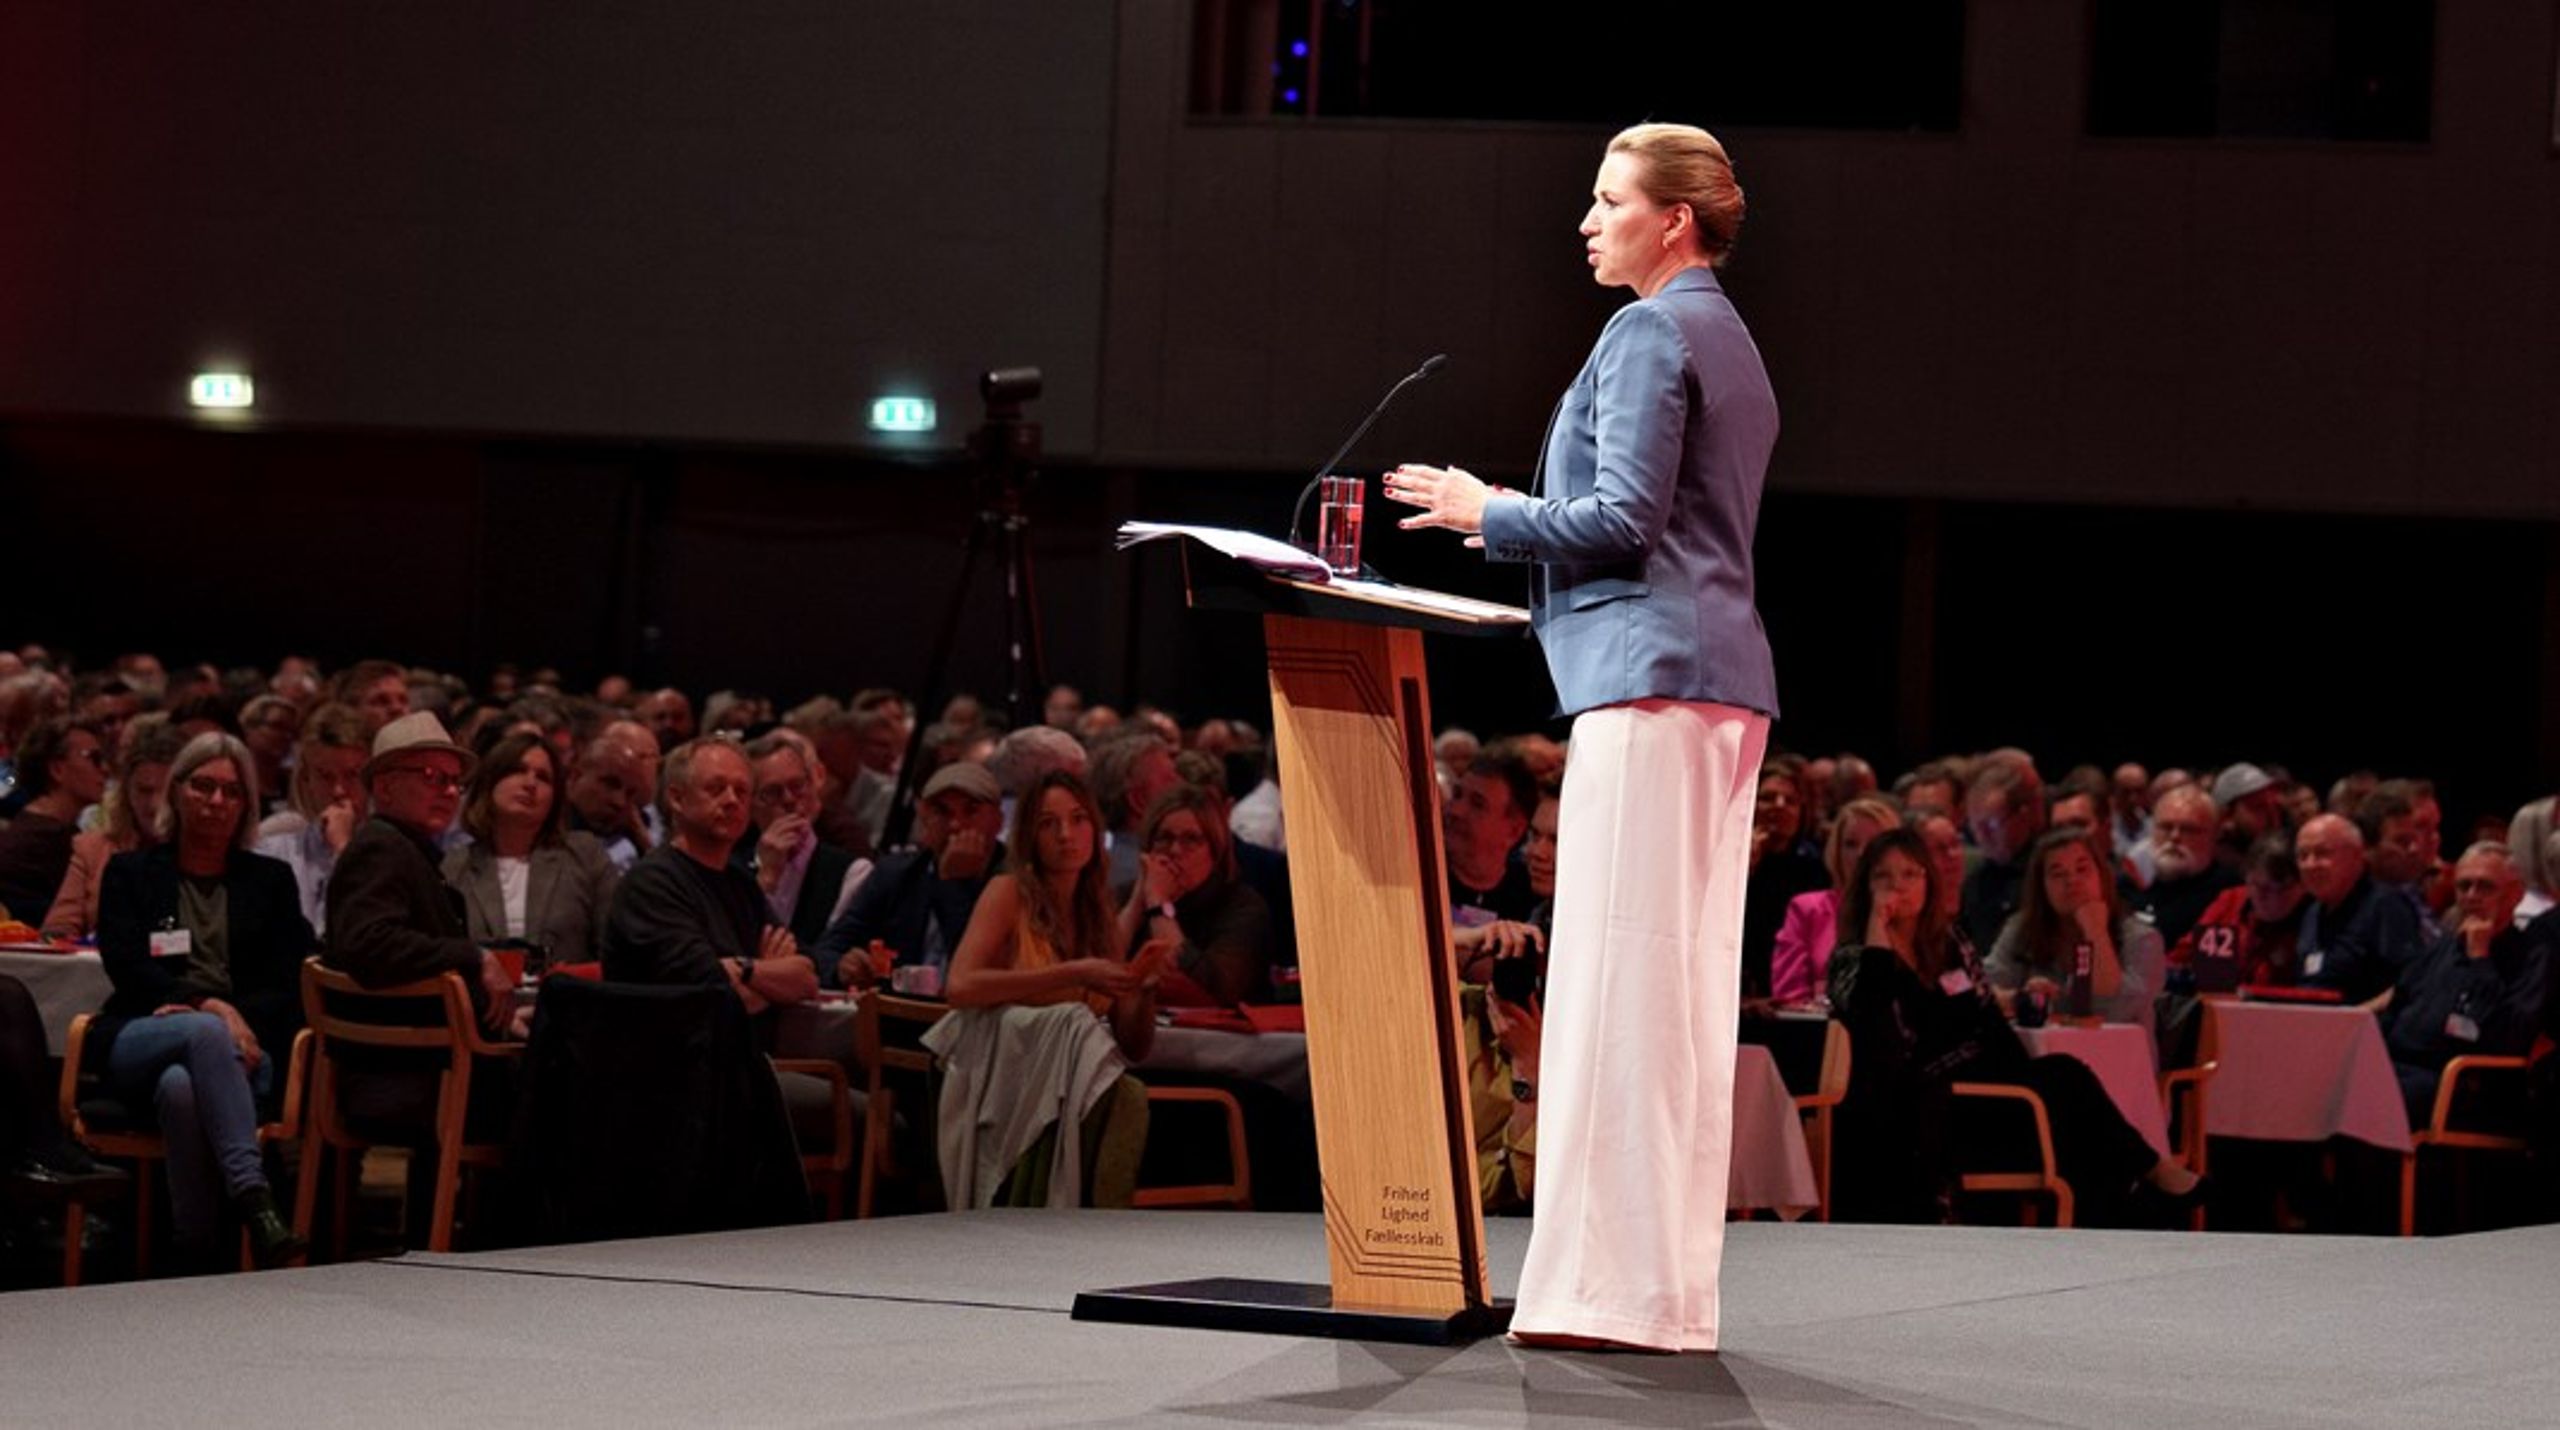 23. og 24. september samles Socialdemokratiet til sin årlige partikongres. Det er første gang, at Mette Frederiksen skal tale til sit bagland med uro i geledderne, vurderer Altingets politiske kommentator.